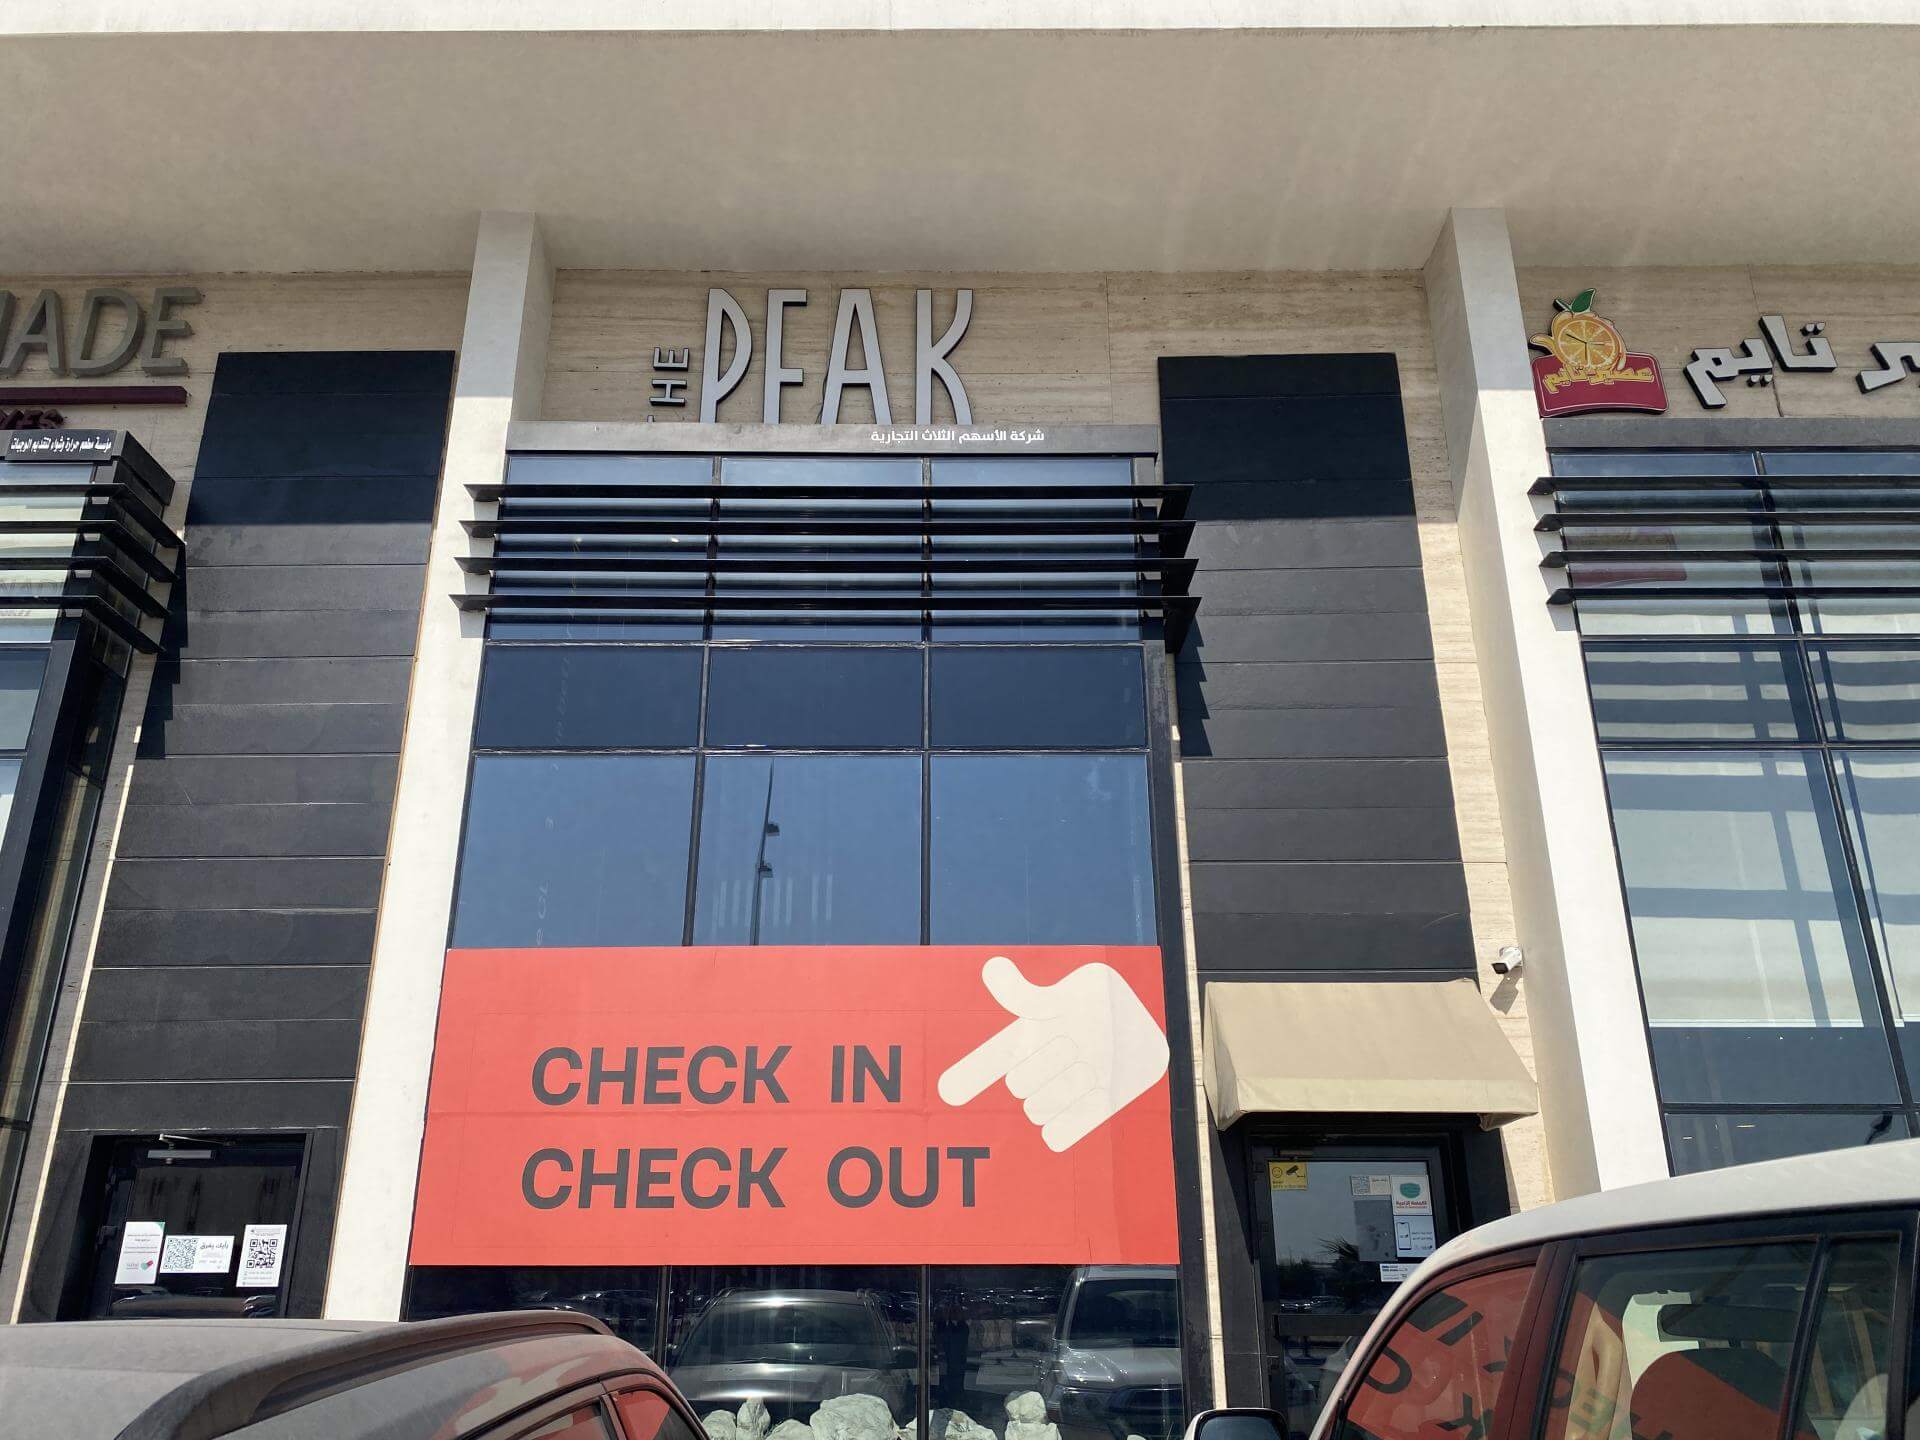 The Peak Burger Restaurant in Khobar